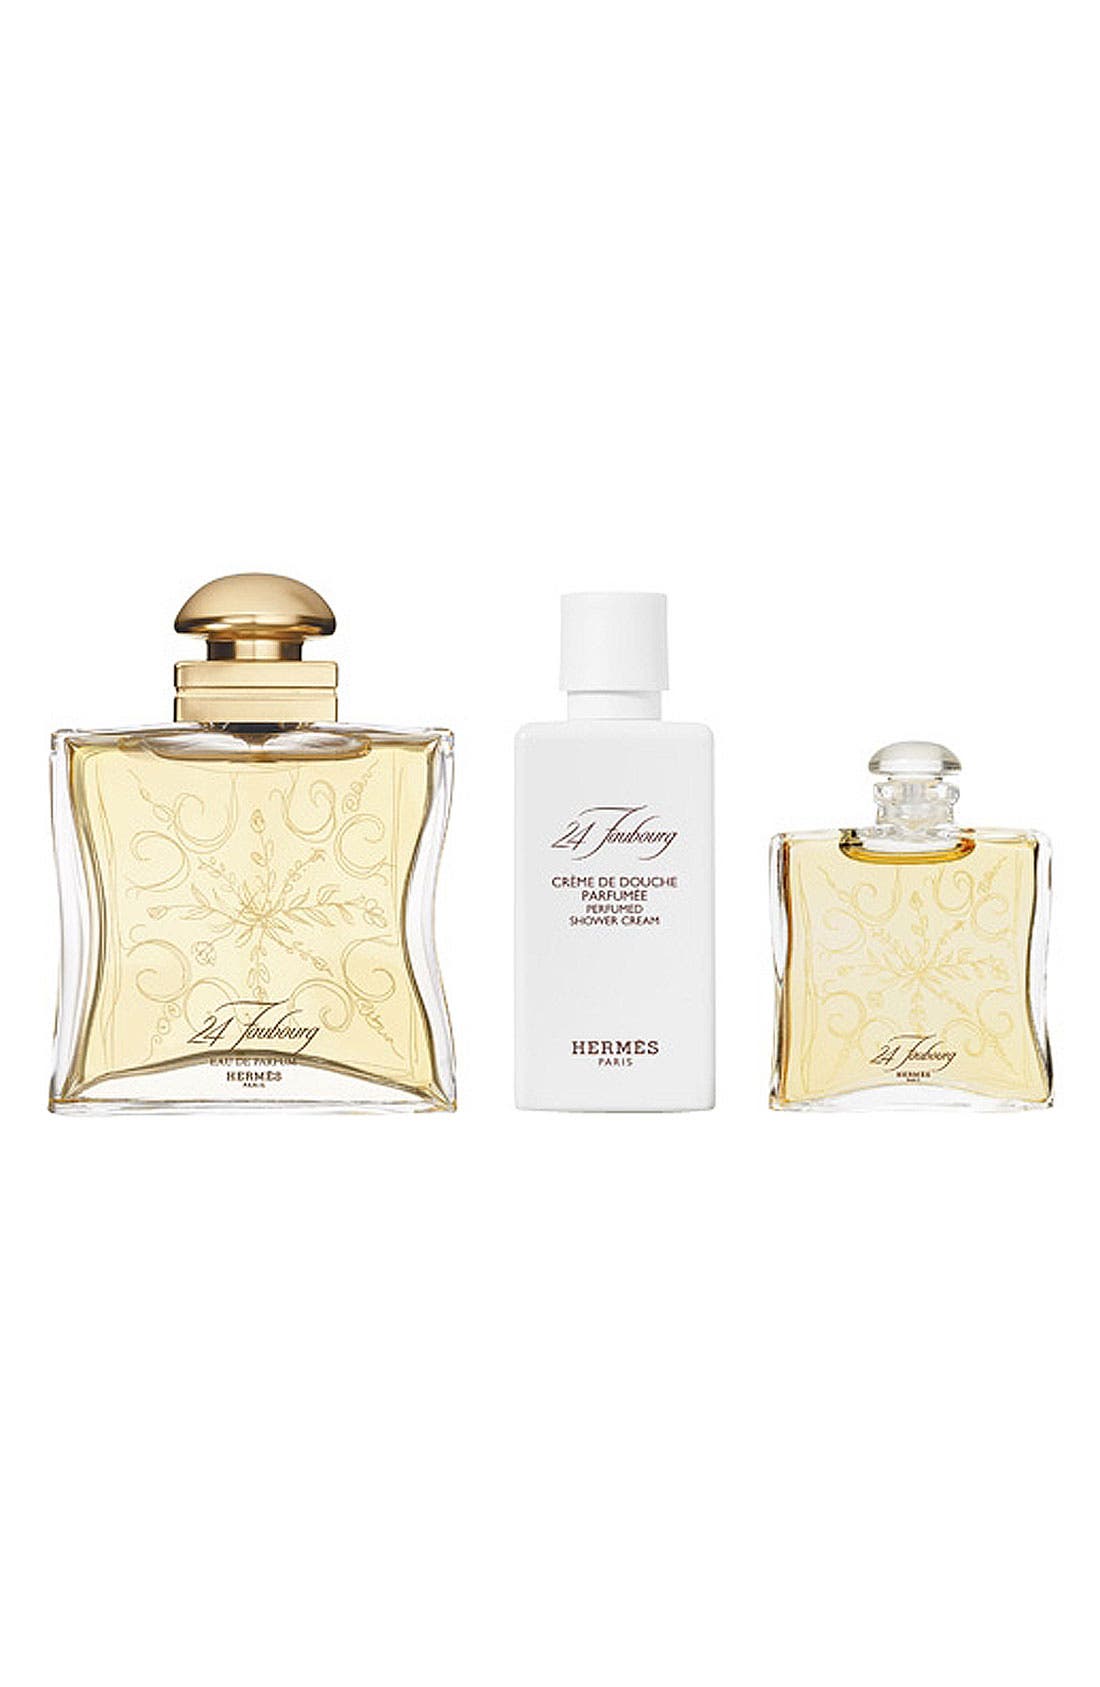 24 Faubourg - Eau de parfum gift set 